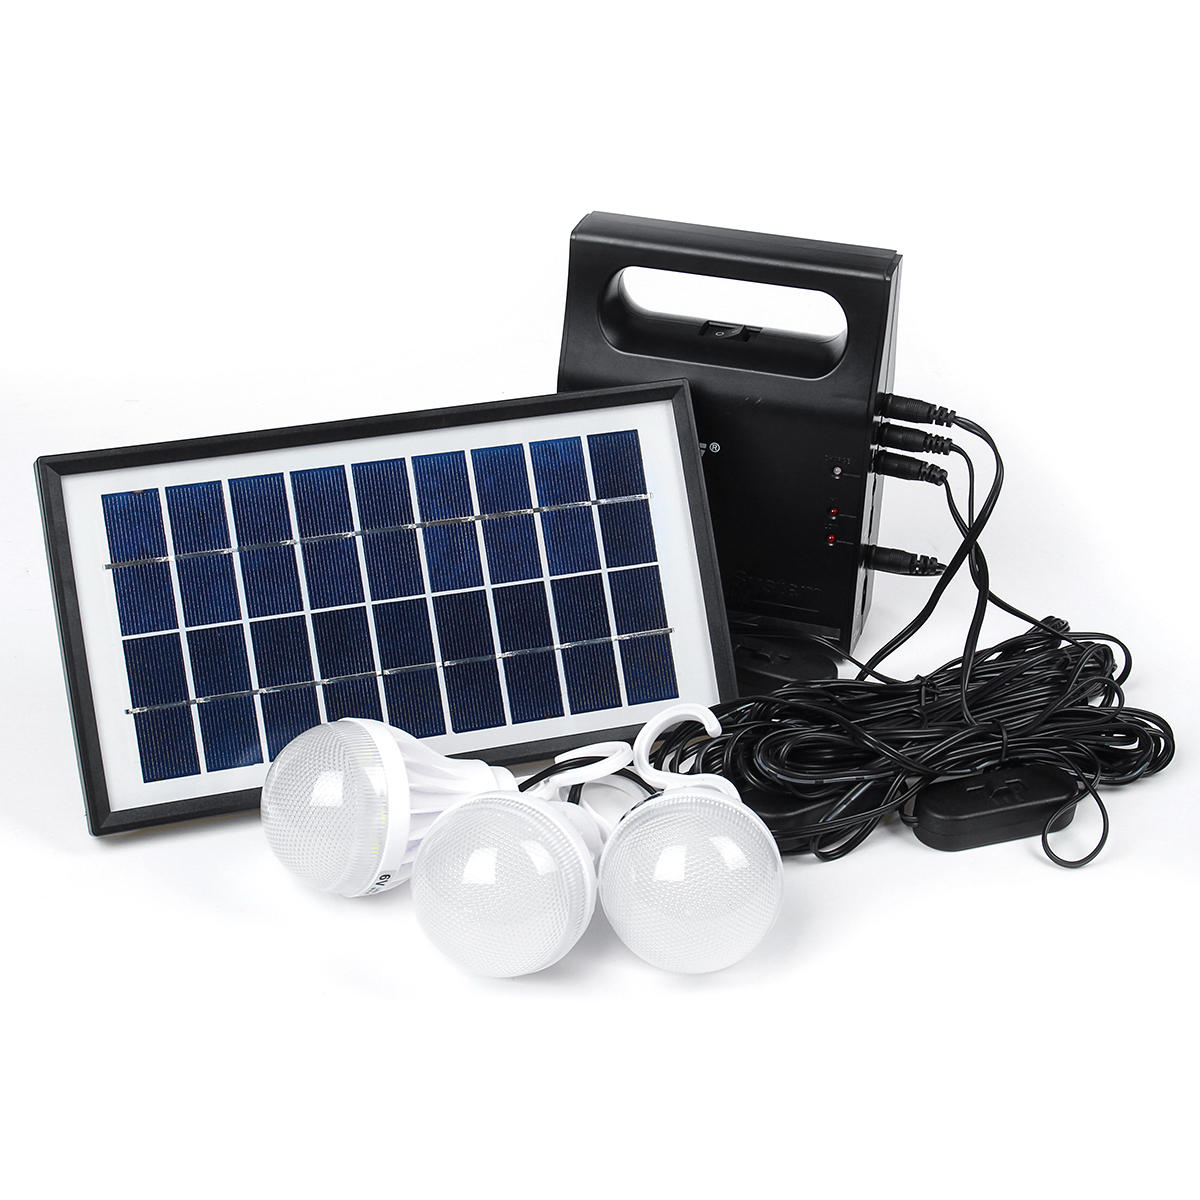 tema de luz de panel solar con bombillas LED USB de 6V para exteriores, jardines, camping y emergencias